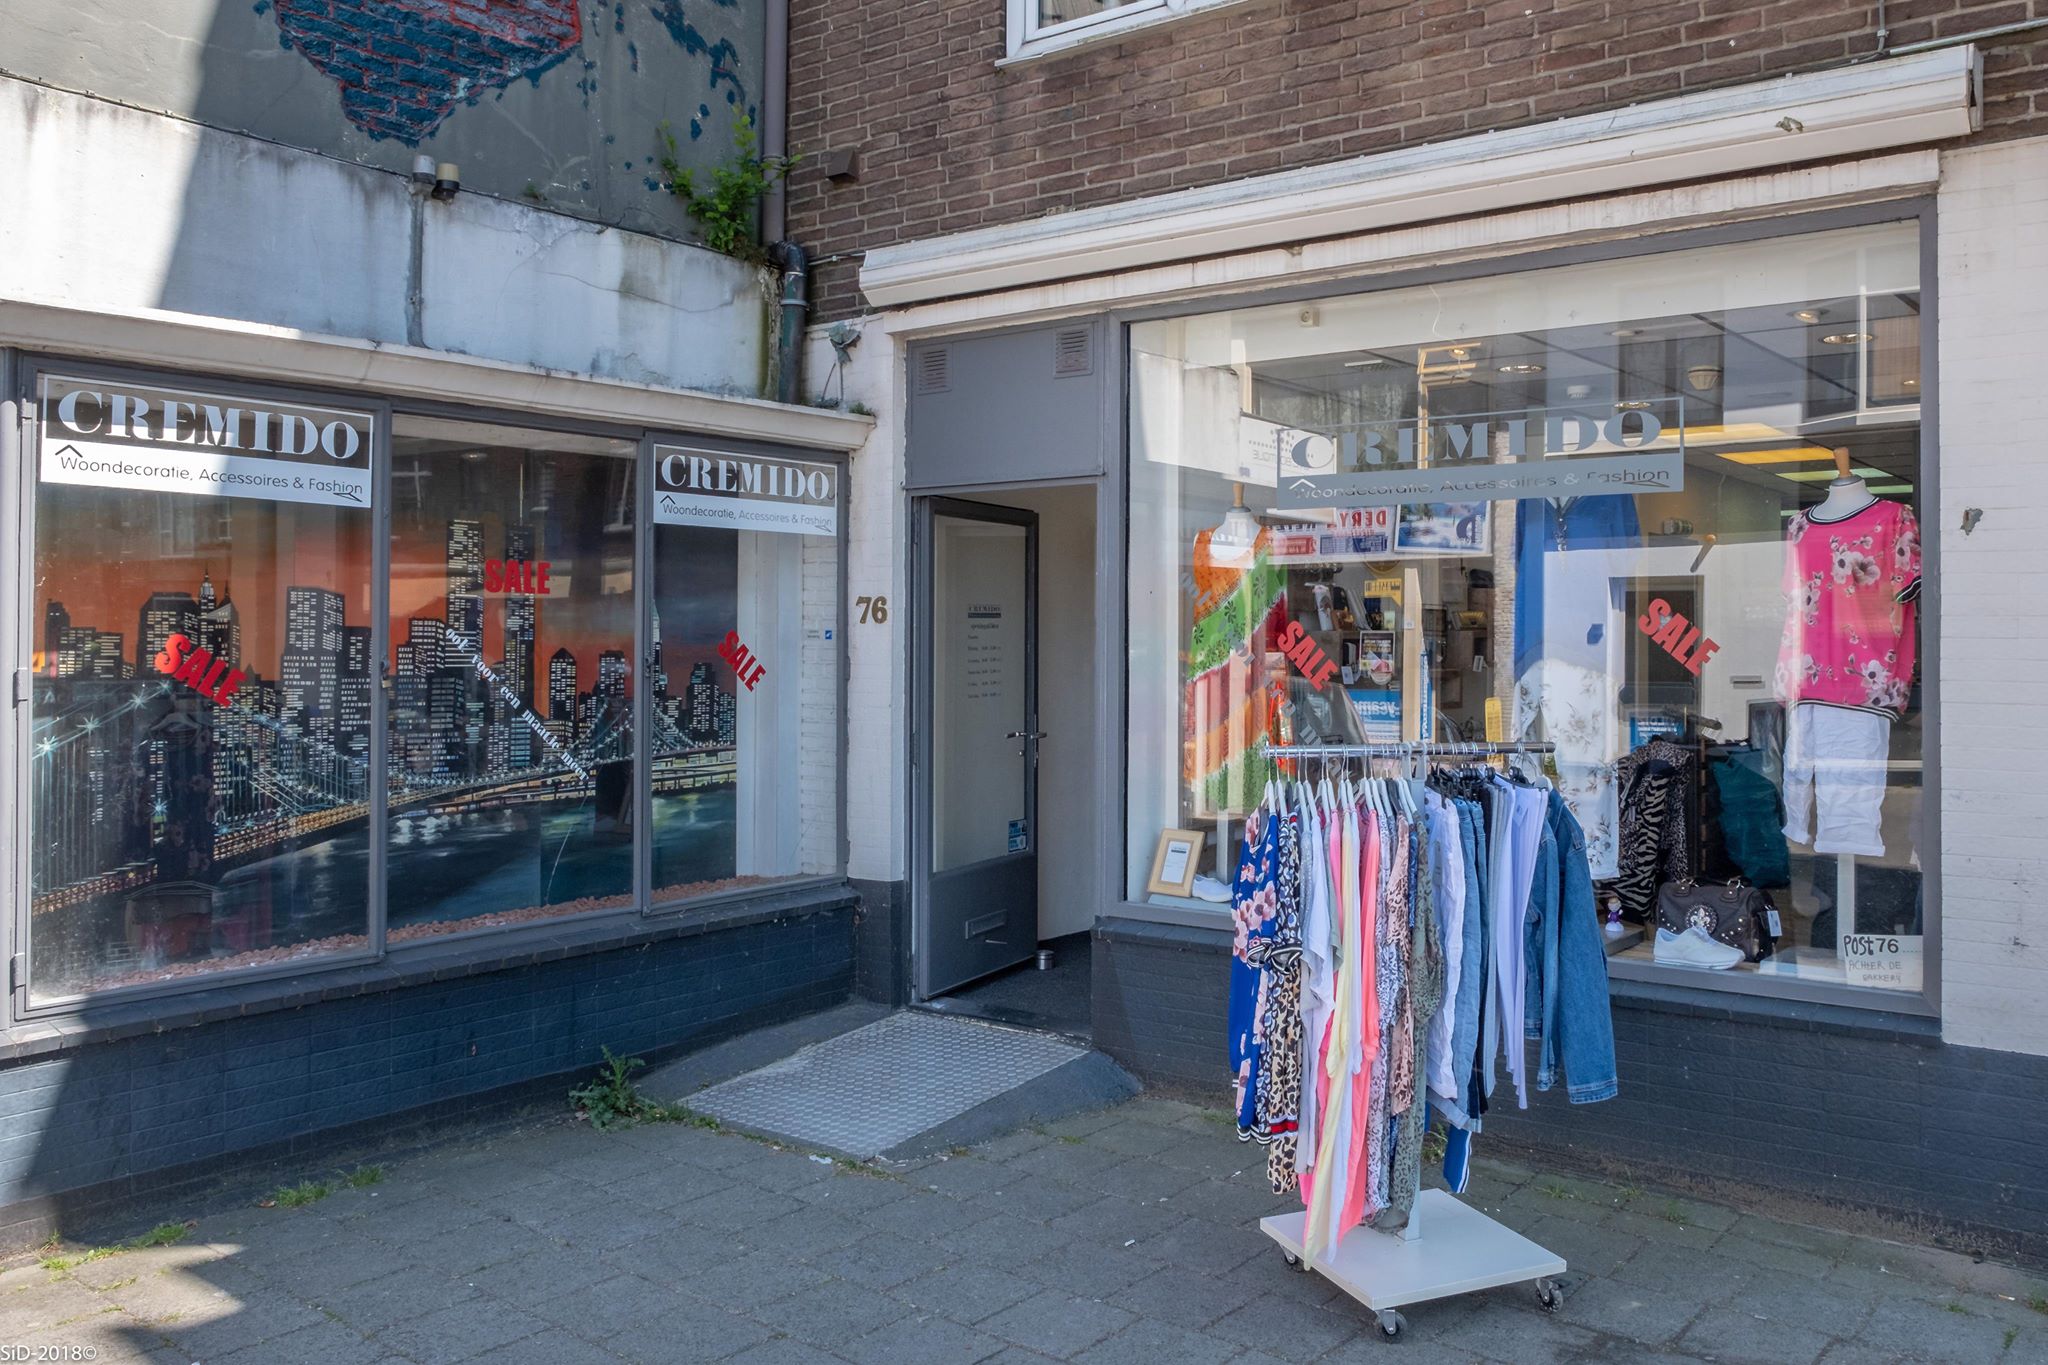 Cremido Fashion voor een maatje meer in Deventer